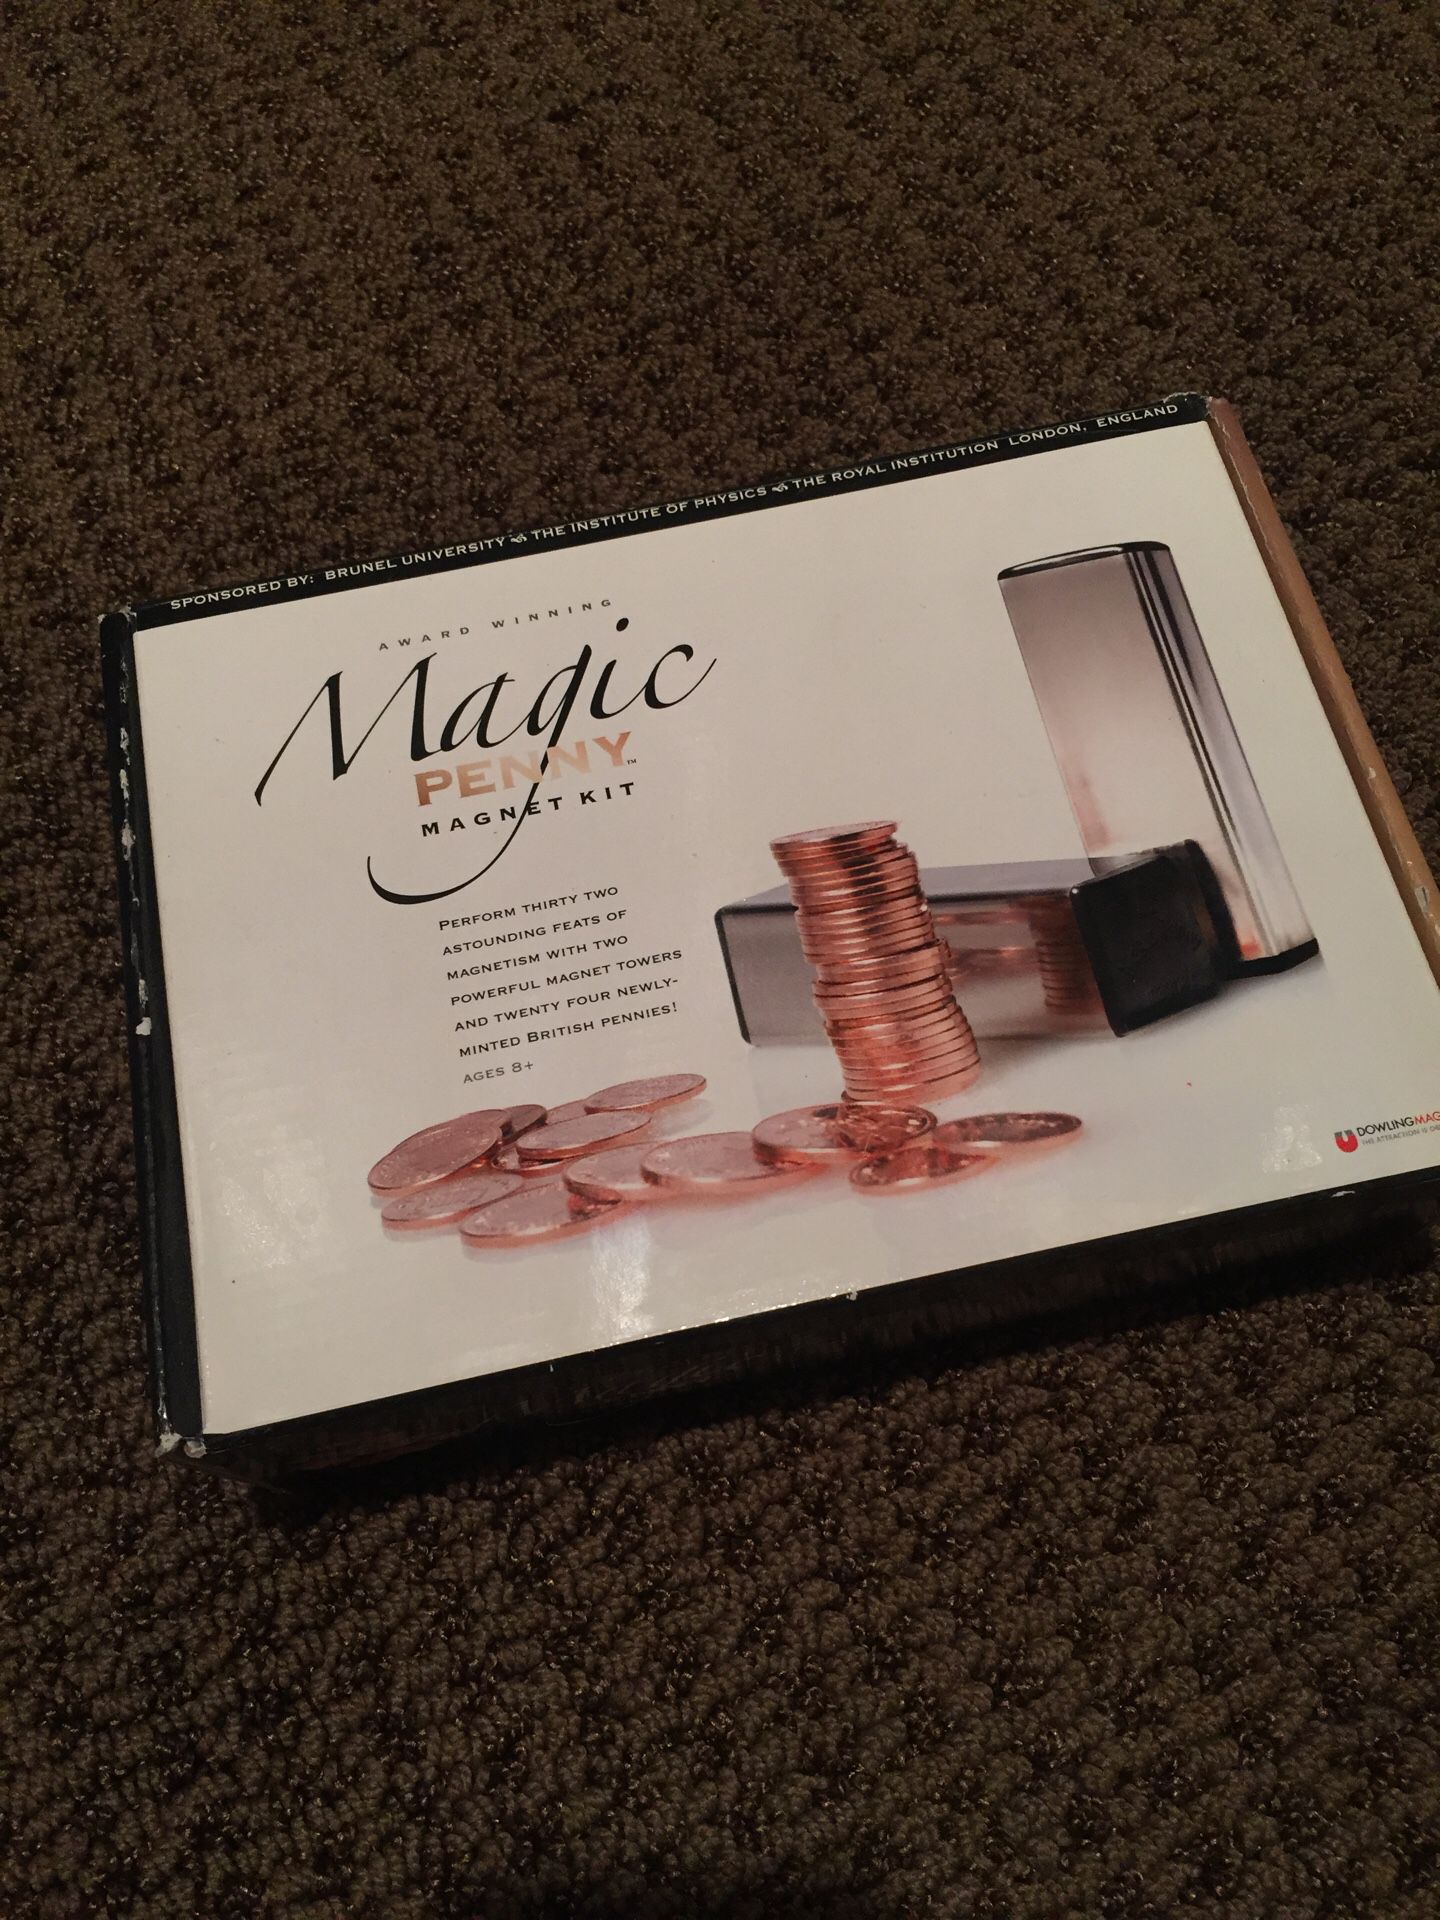 Magic Penny Magnet Kit